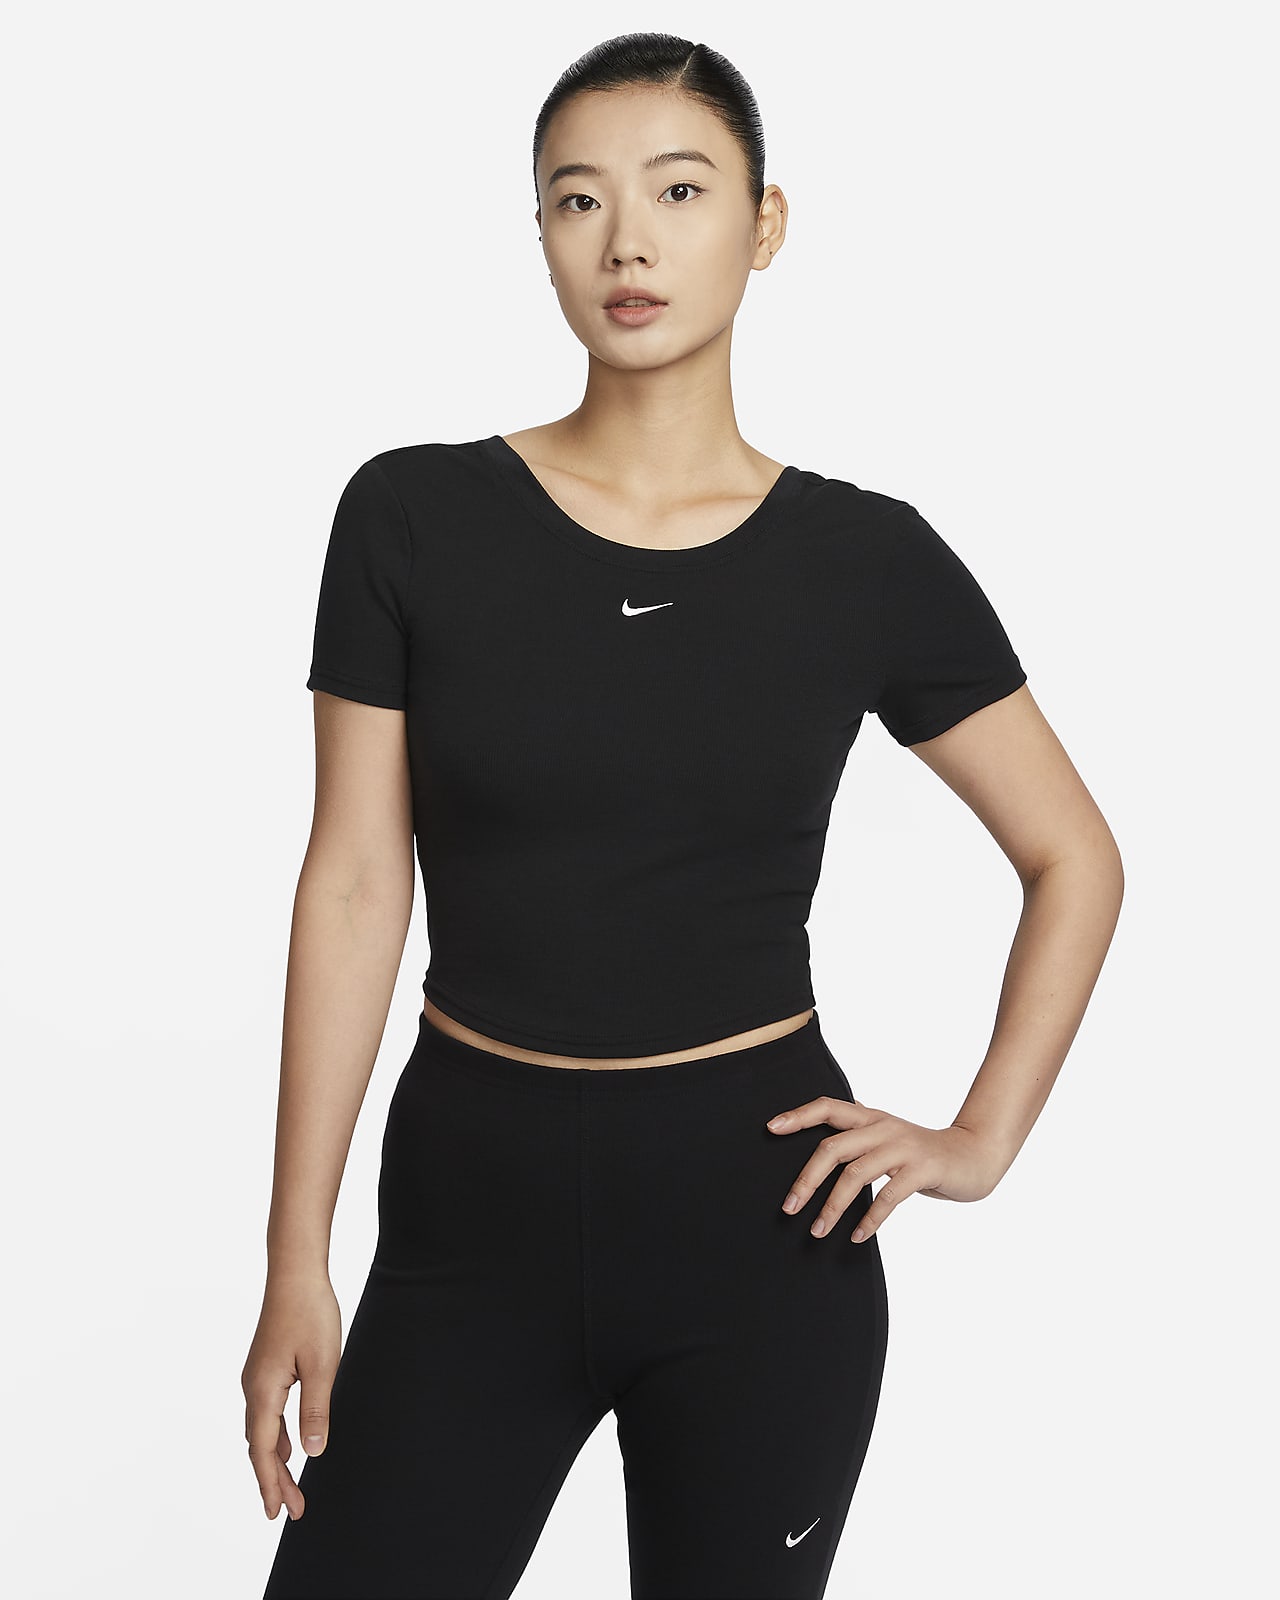 เสื้อแขนสั้นผู้หญิงผ้าร่องเล็กทรงรัดรูปด้านหลังเว้าลึก Nike Sportswear Chill Knit